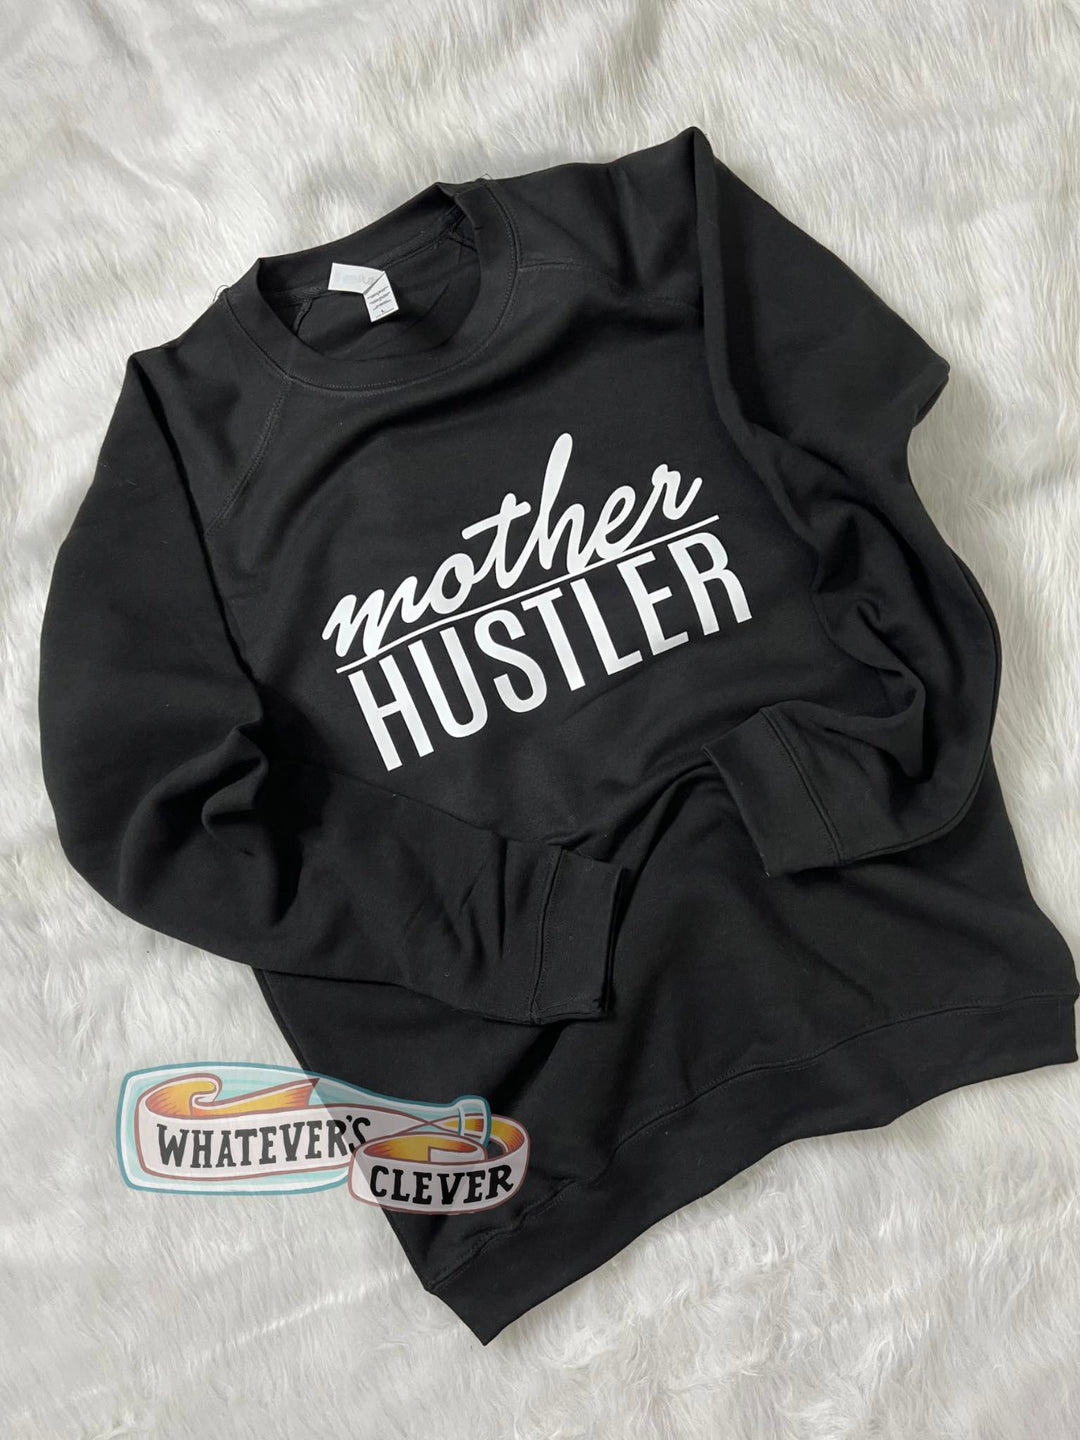 Mother Hustler Crewneck